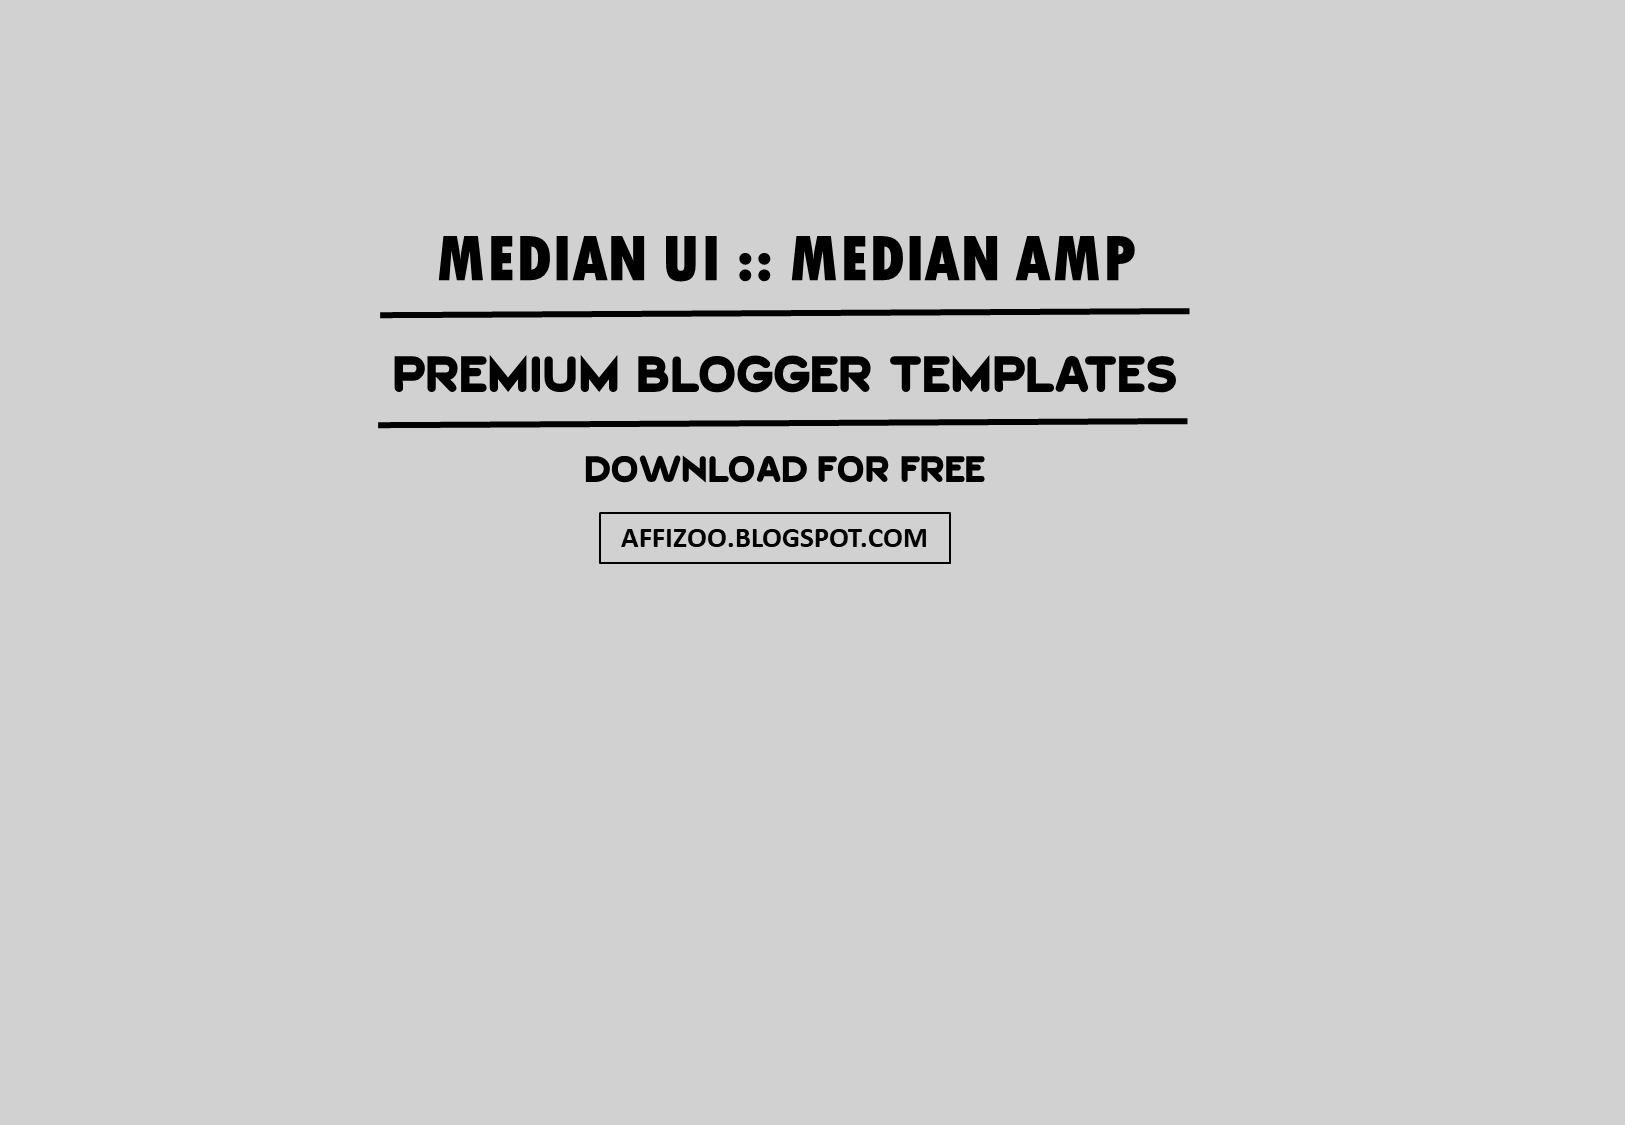 [Updated] Median UI v1.5 + AMP v1.5 Premium Blogger Template | Safelink Download